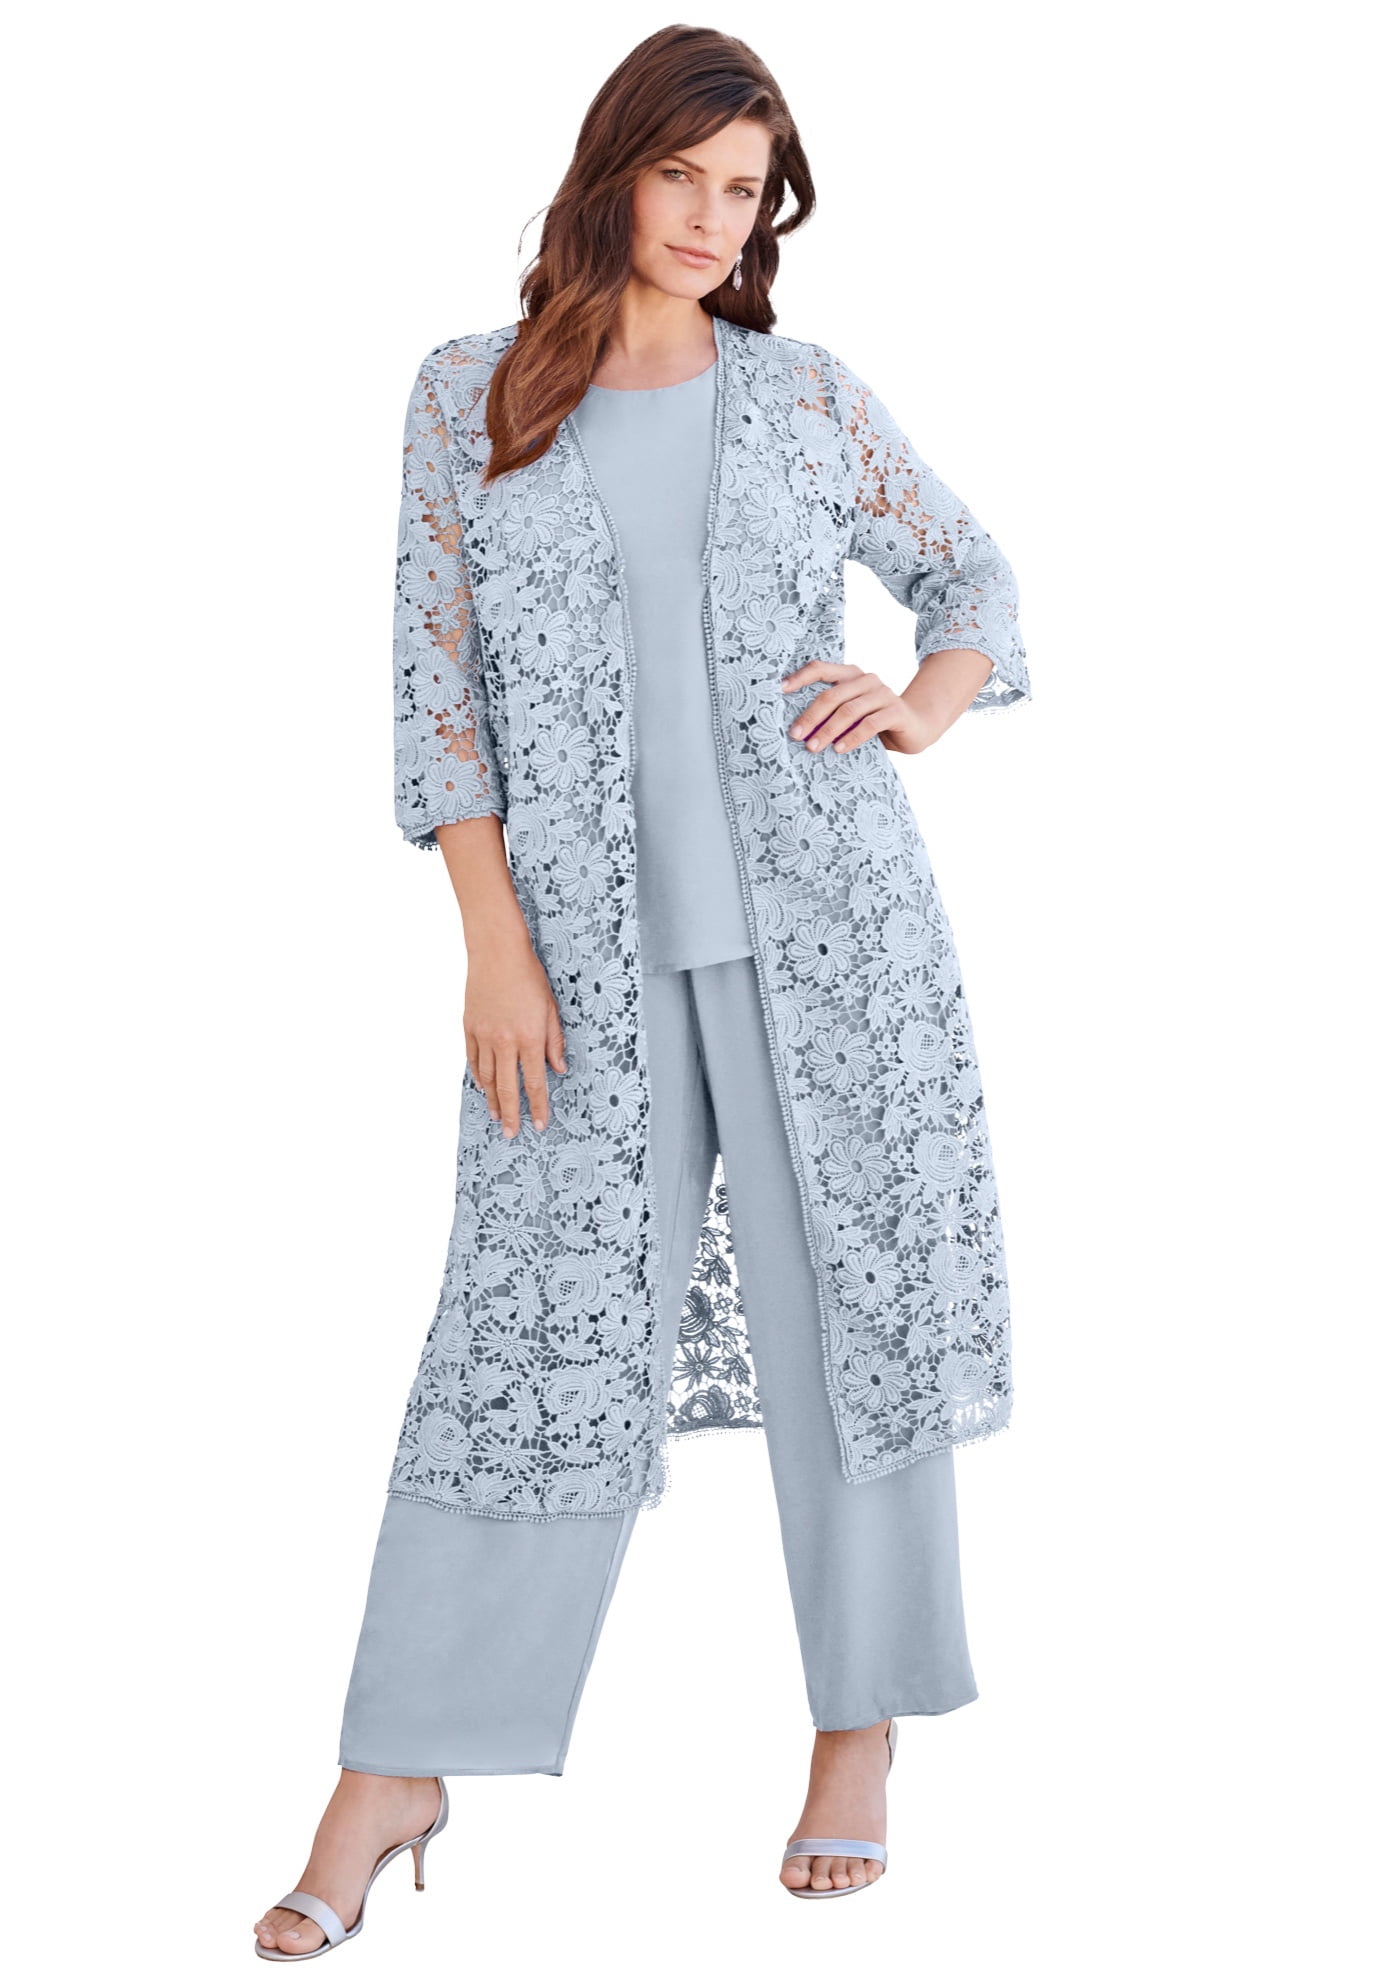 Roaman's Women's Plus Size Petite Three-Piece Lace Duster & Pant Suit